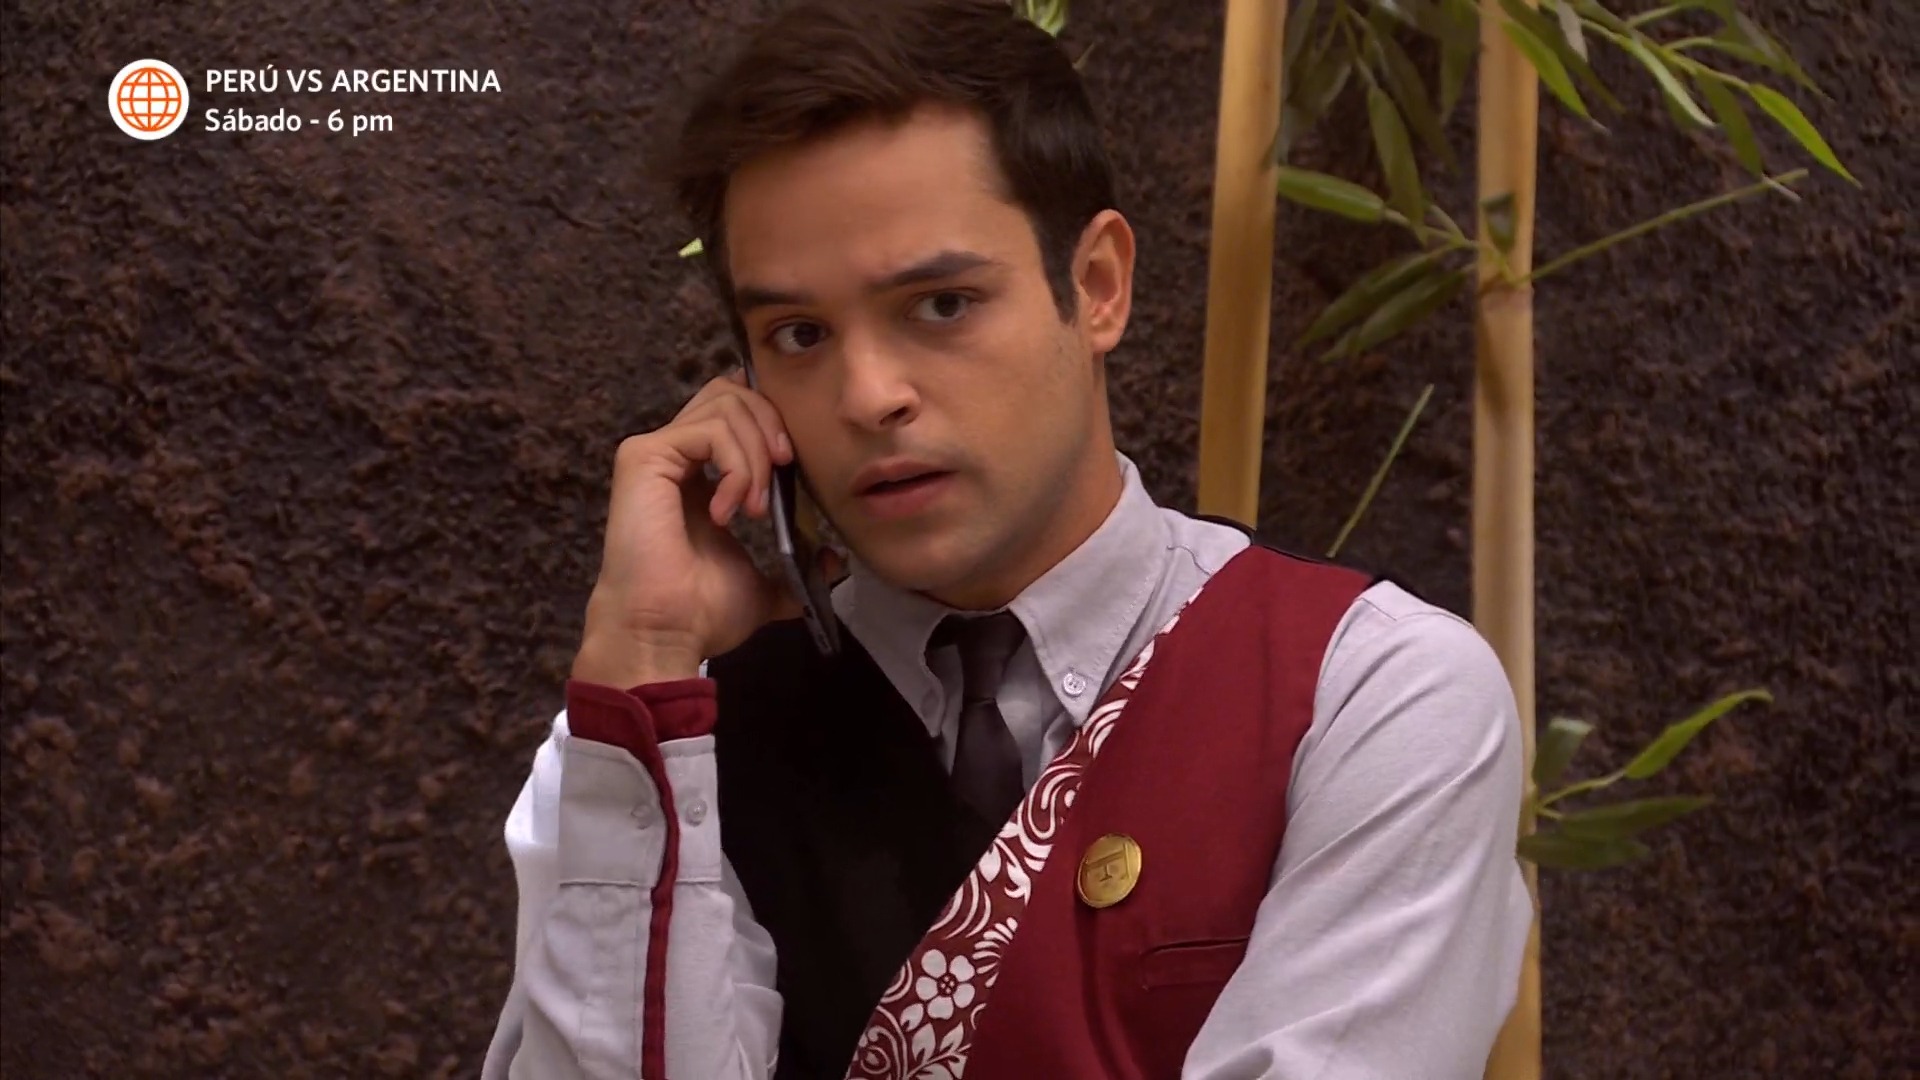 Alessia llamó a Cristóbal y descargó su furia tras saber que besó a Laia. Fuente: AméricaTV